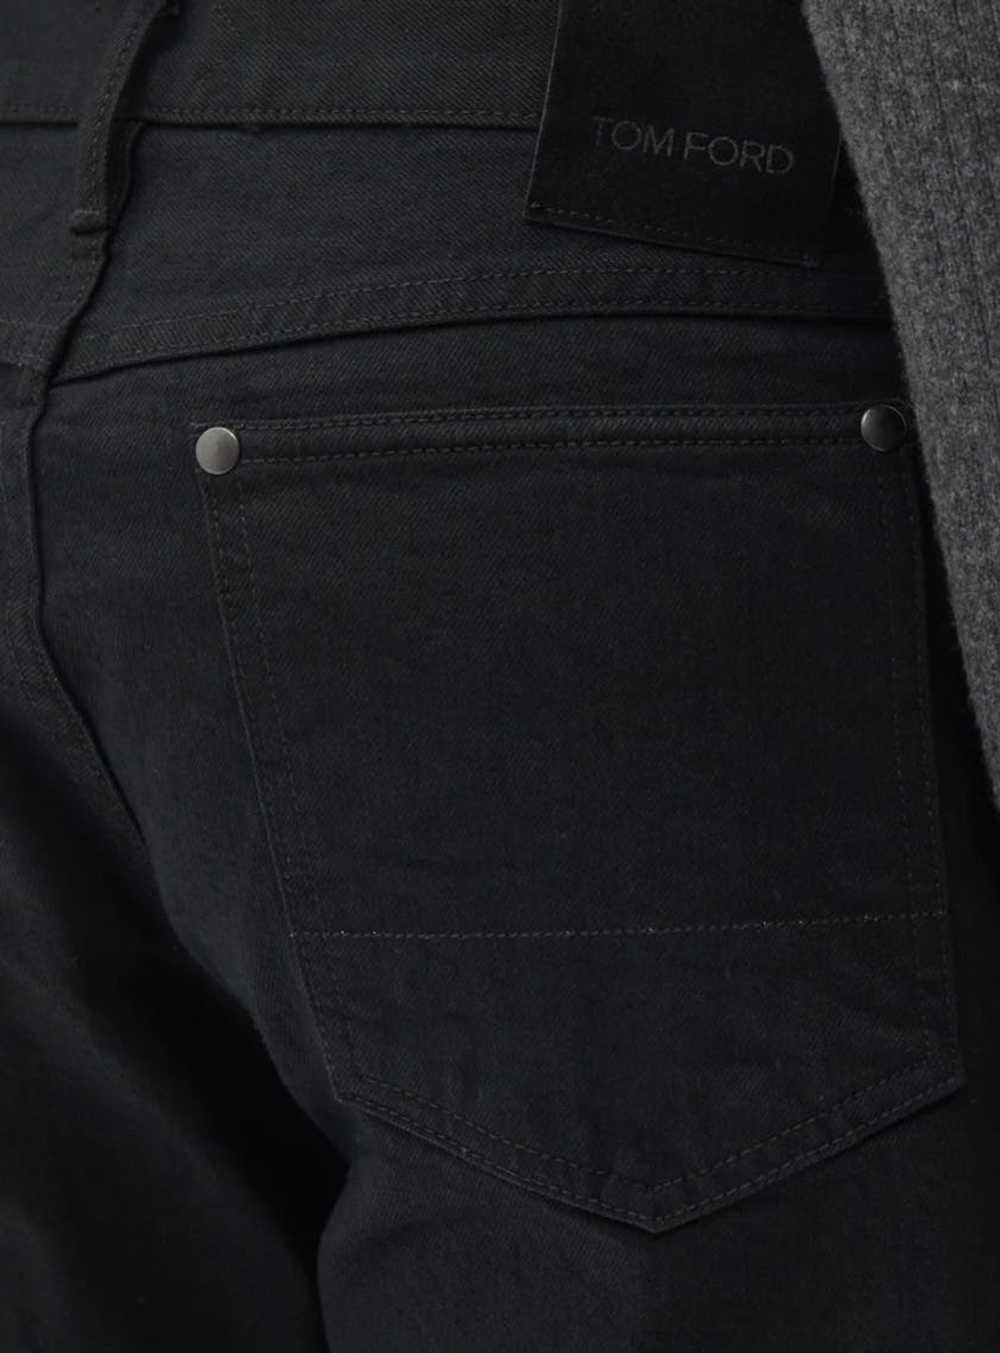 Tom Ford Tom Ford selvedge tapered-leg jeans - image 3